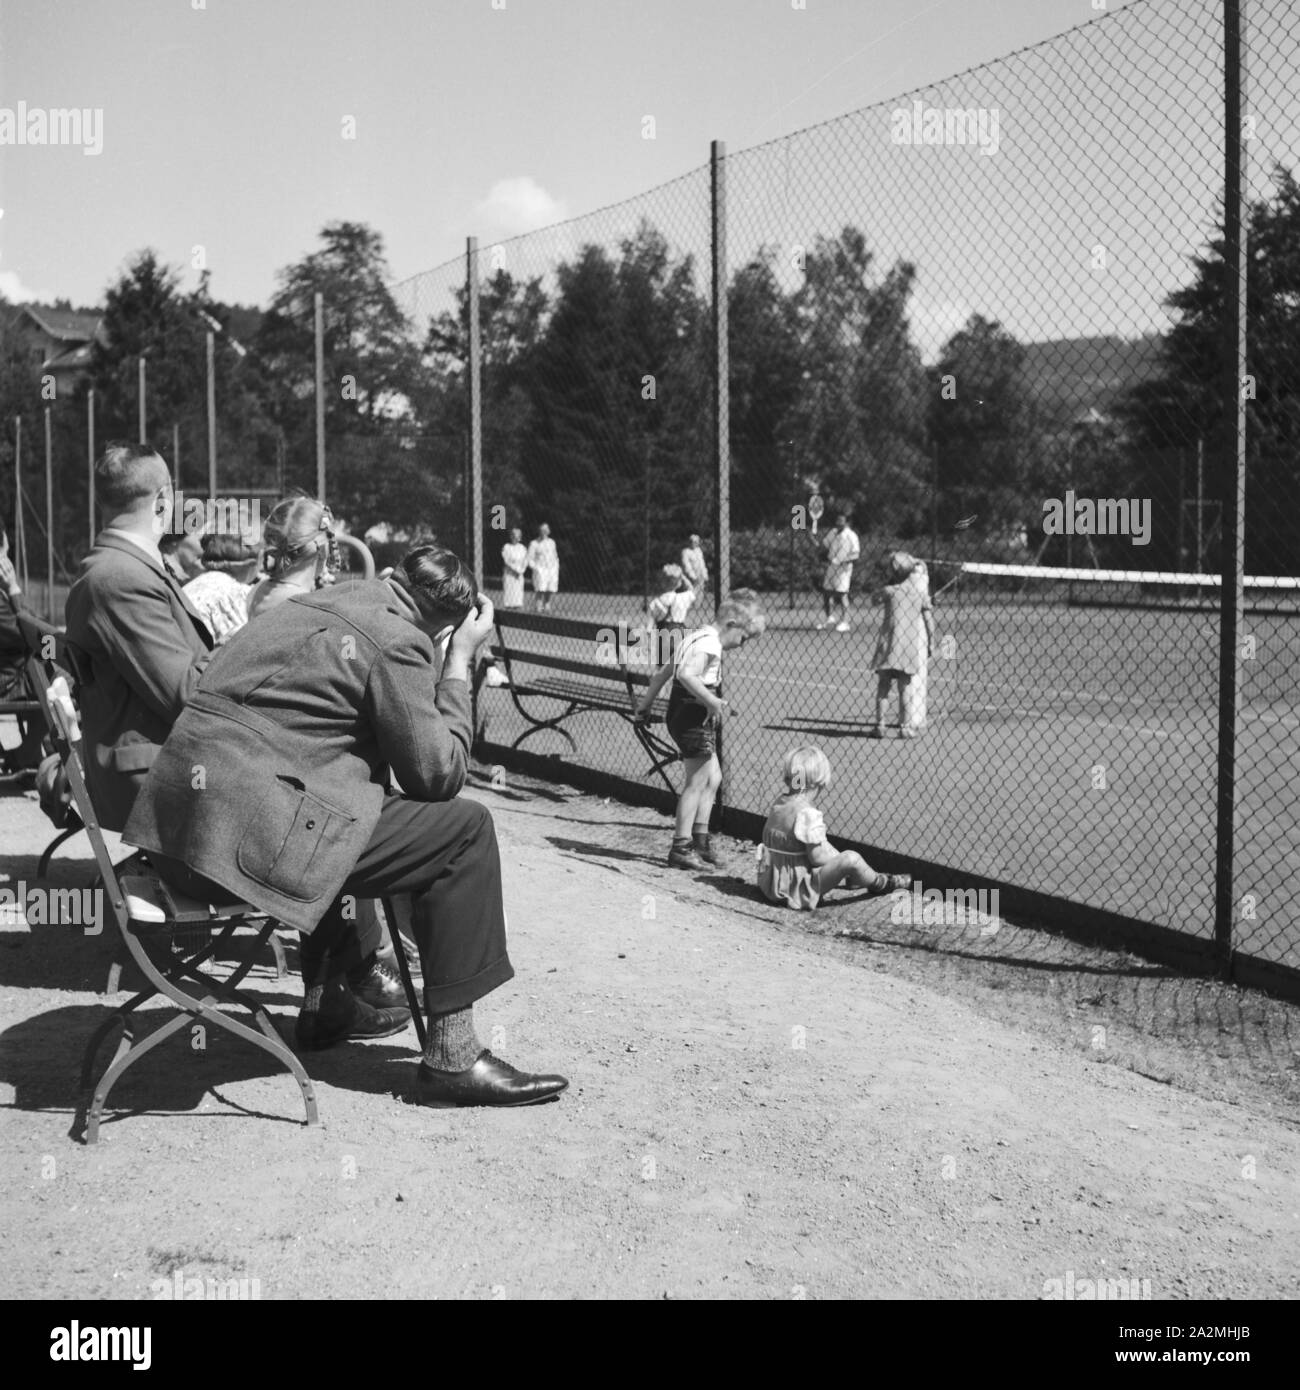 Zuschauer am Tennisplatz, Deutschland 1930er Jahre. Spectators at a tennis court, Germany 1930s. Stock Photo